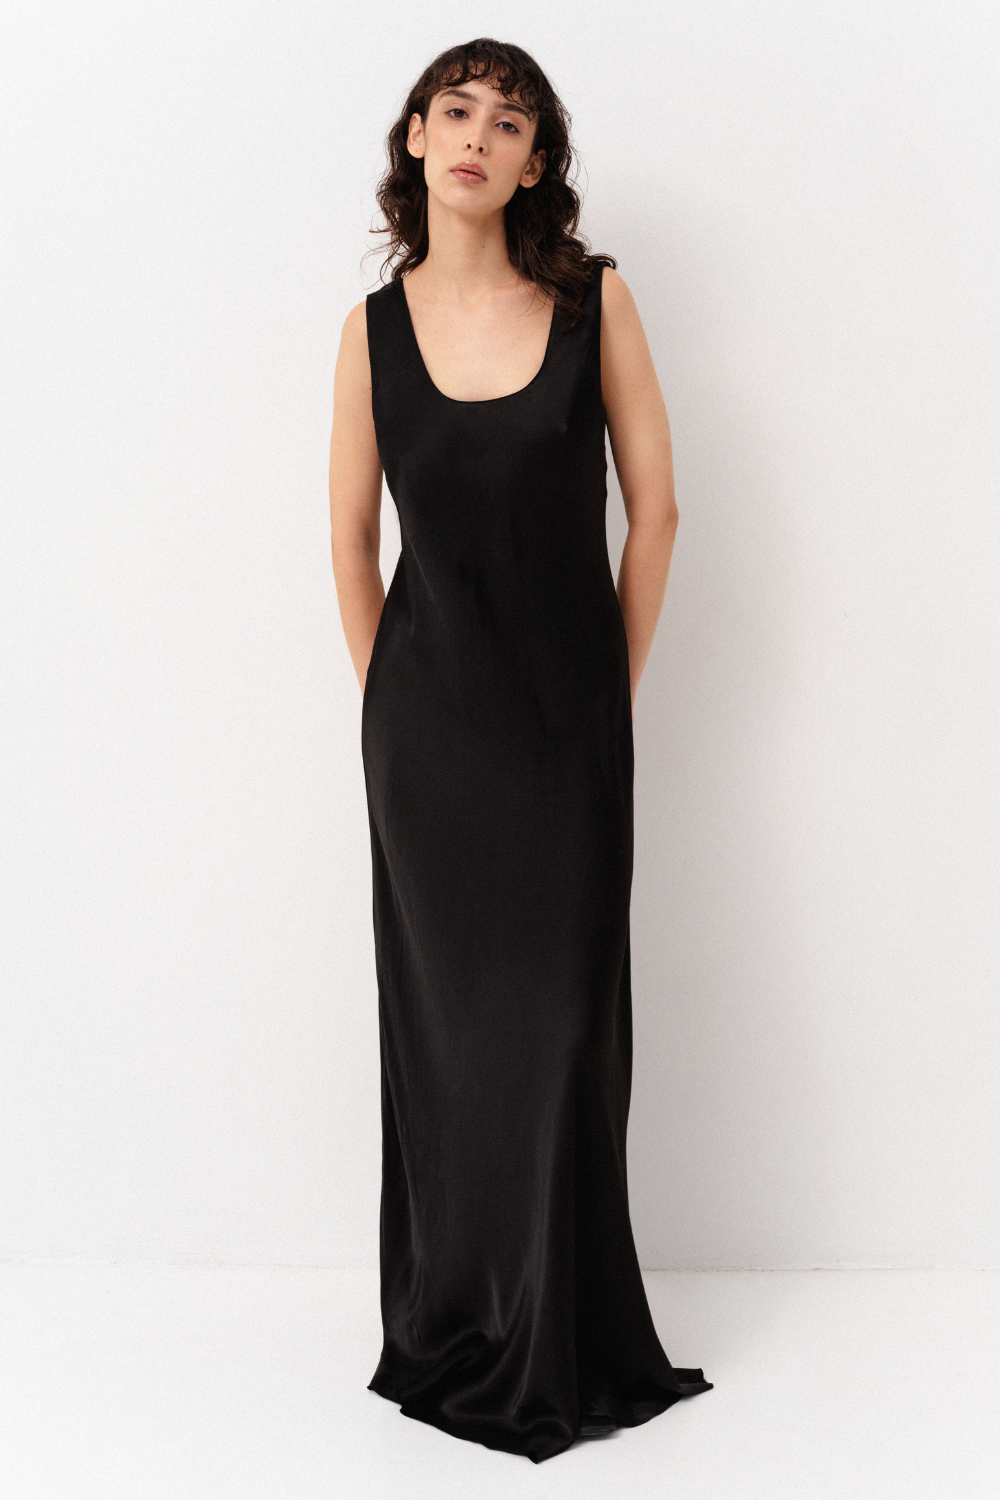 Šaty slip dress, černé, S-M, (Corsis), 21-003